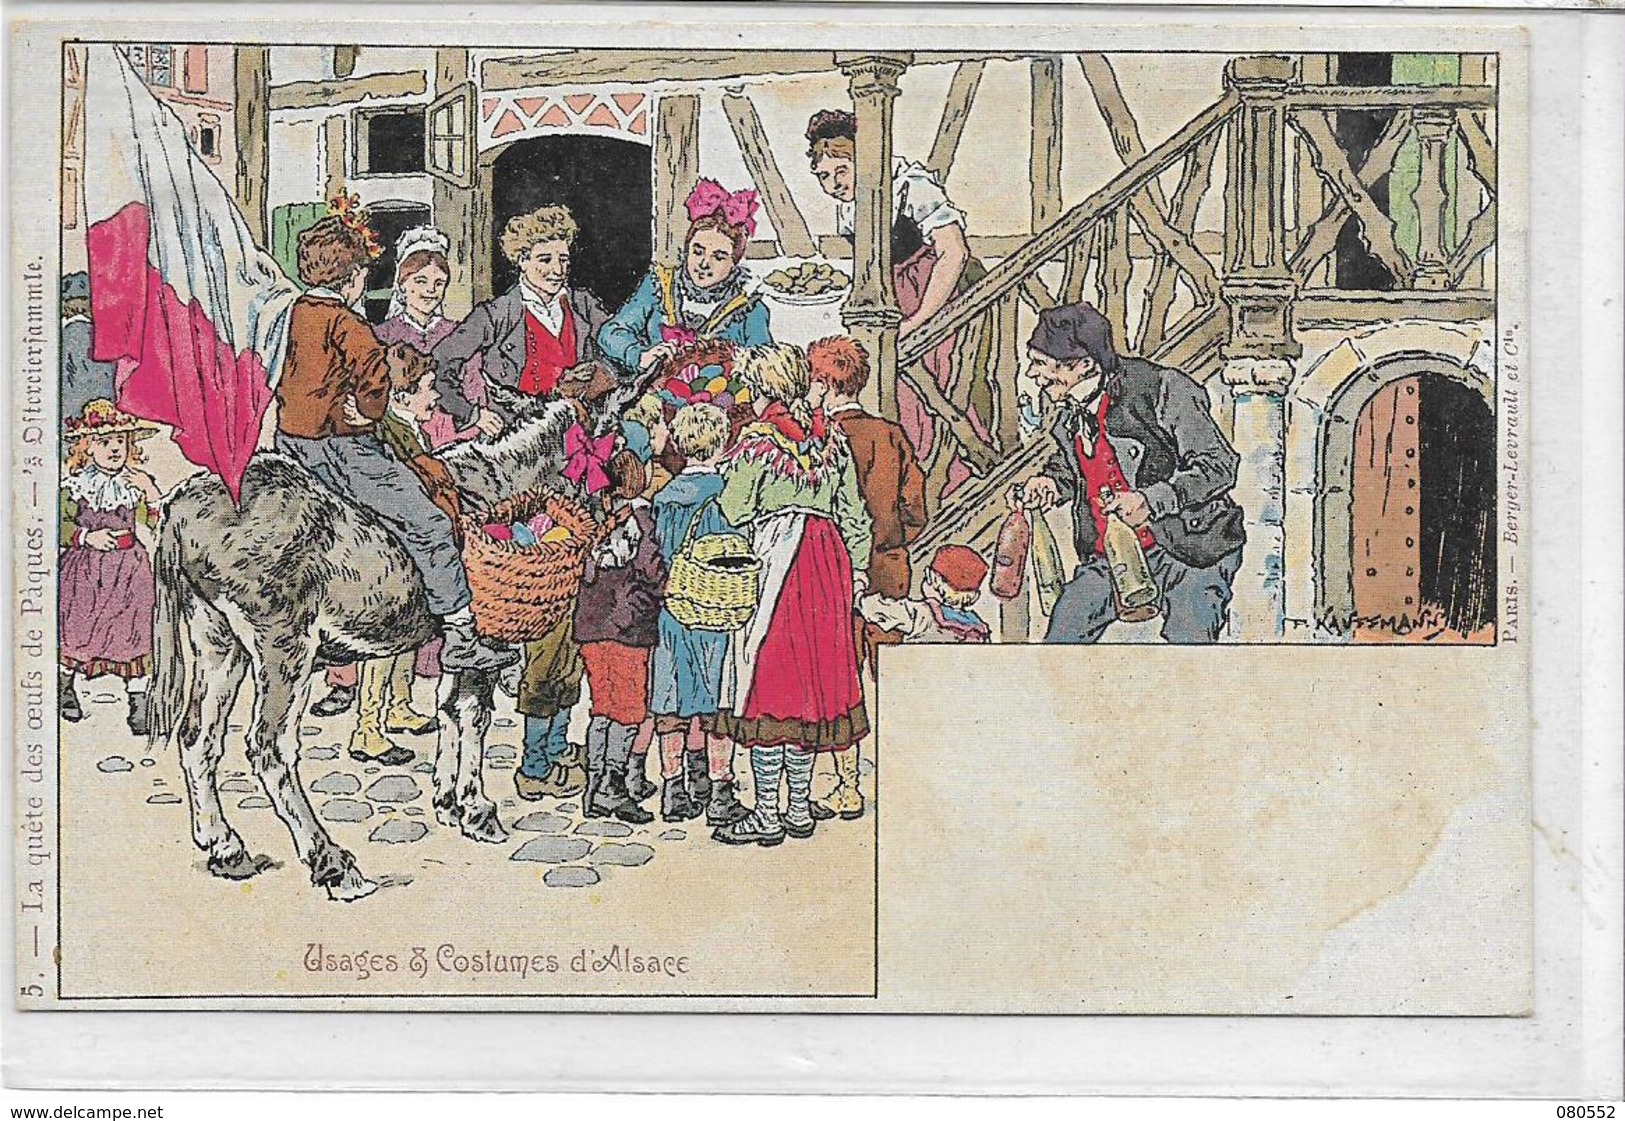 68  LOT 2 , illustrateur Kaufmann de 8 belles cartes , années 1900 , état extra